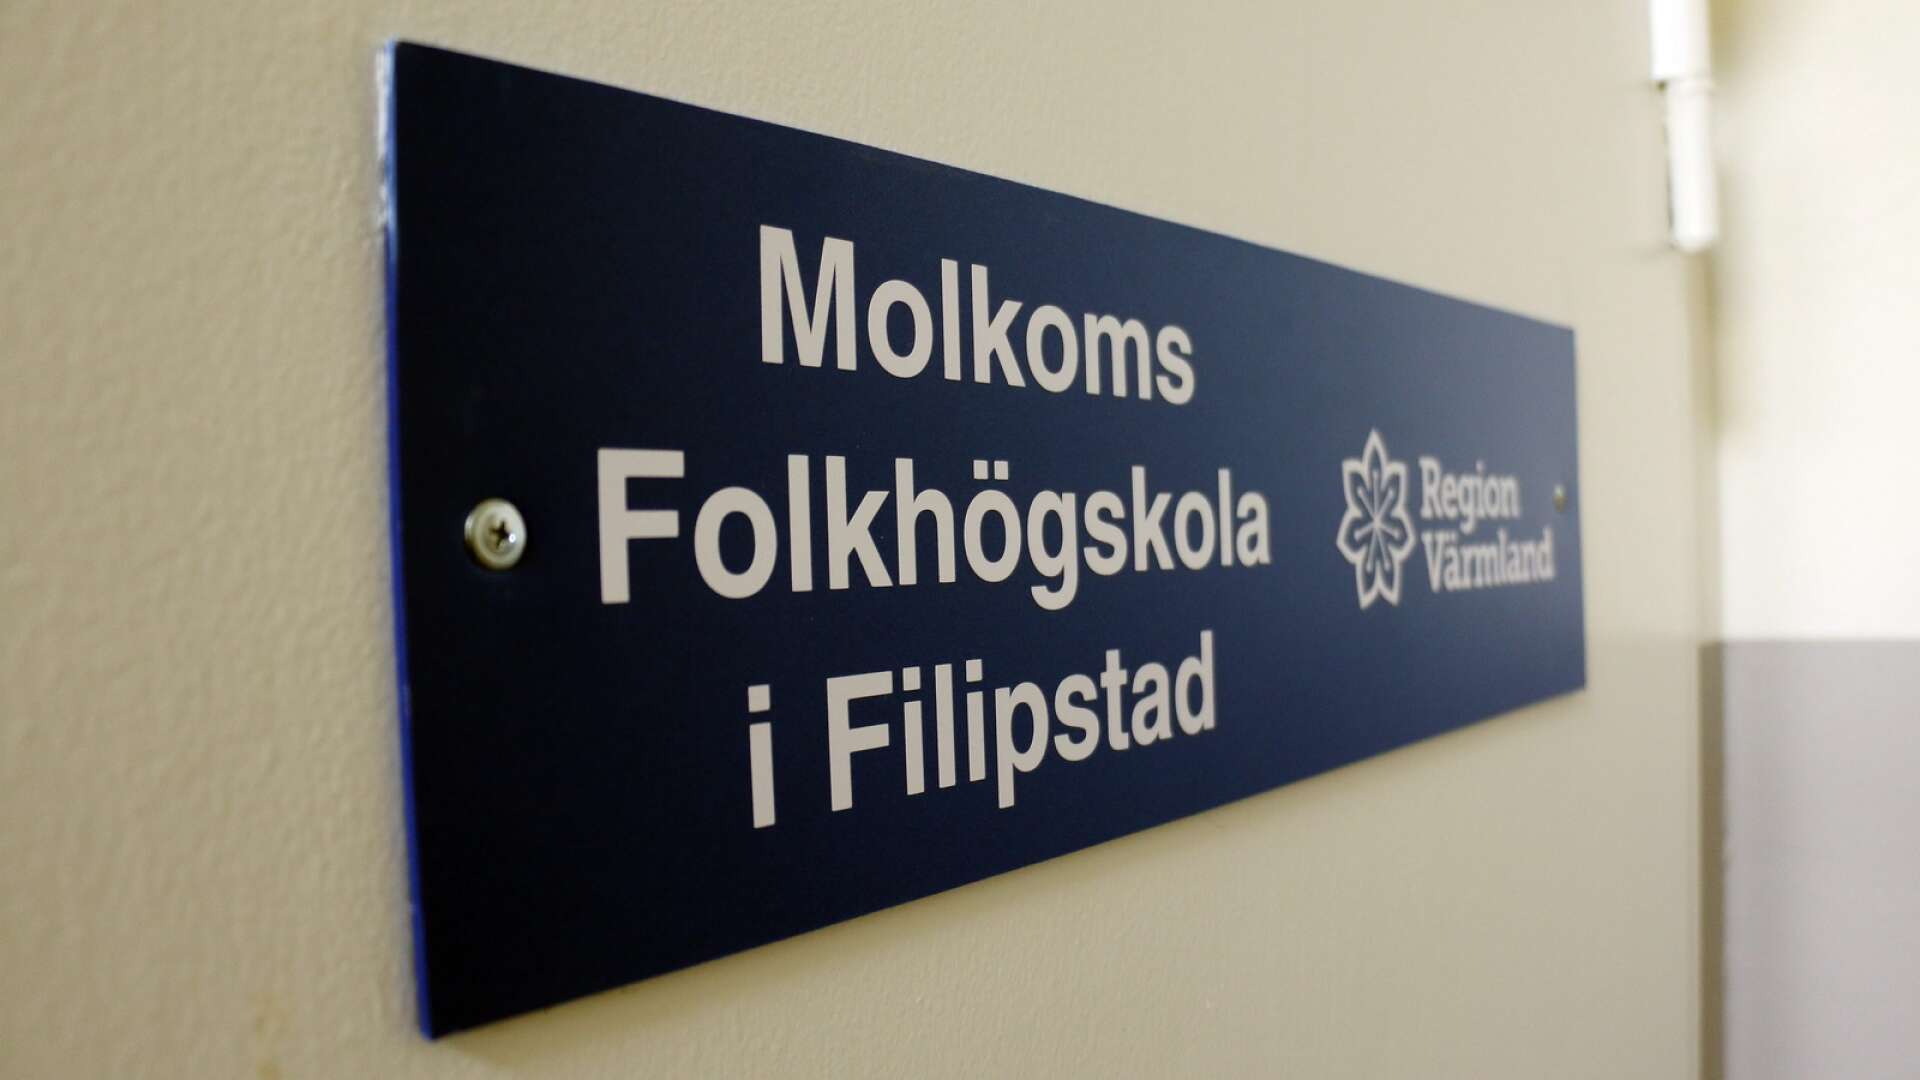 Folkhögskolorna i Molkom, Klarälvdalen och Kristinehamn samarbetar i verksamheten i Filipstad som startade hösten 2019, skriver Elisabeth Kihlström med flera.